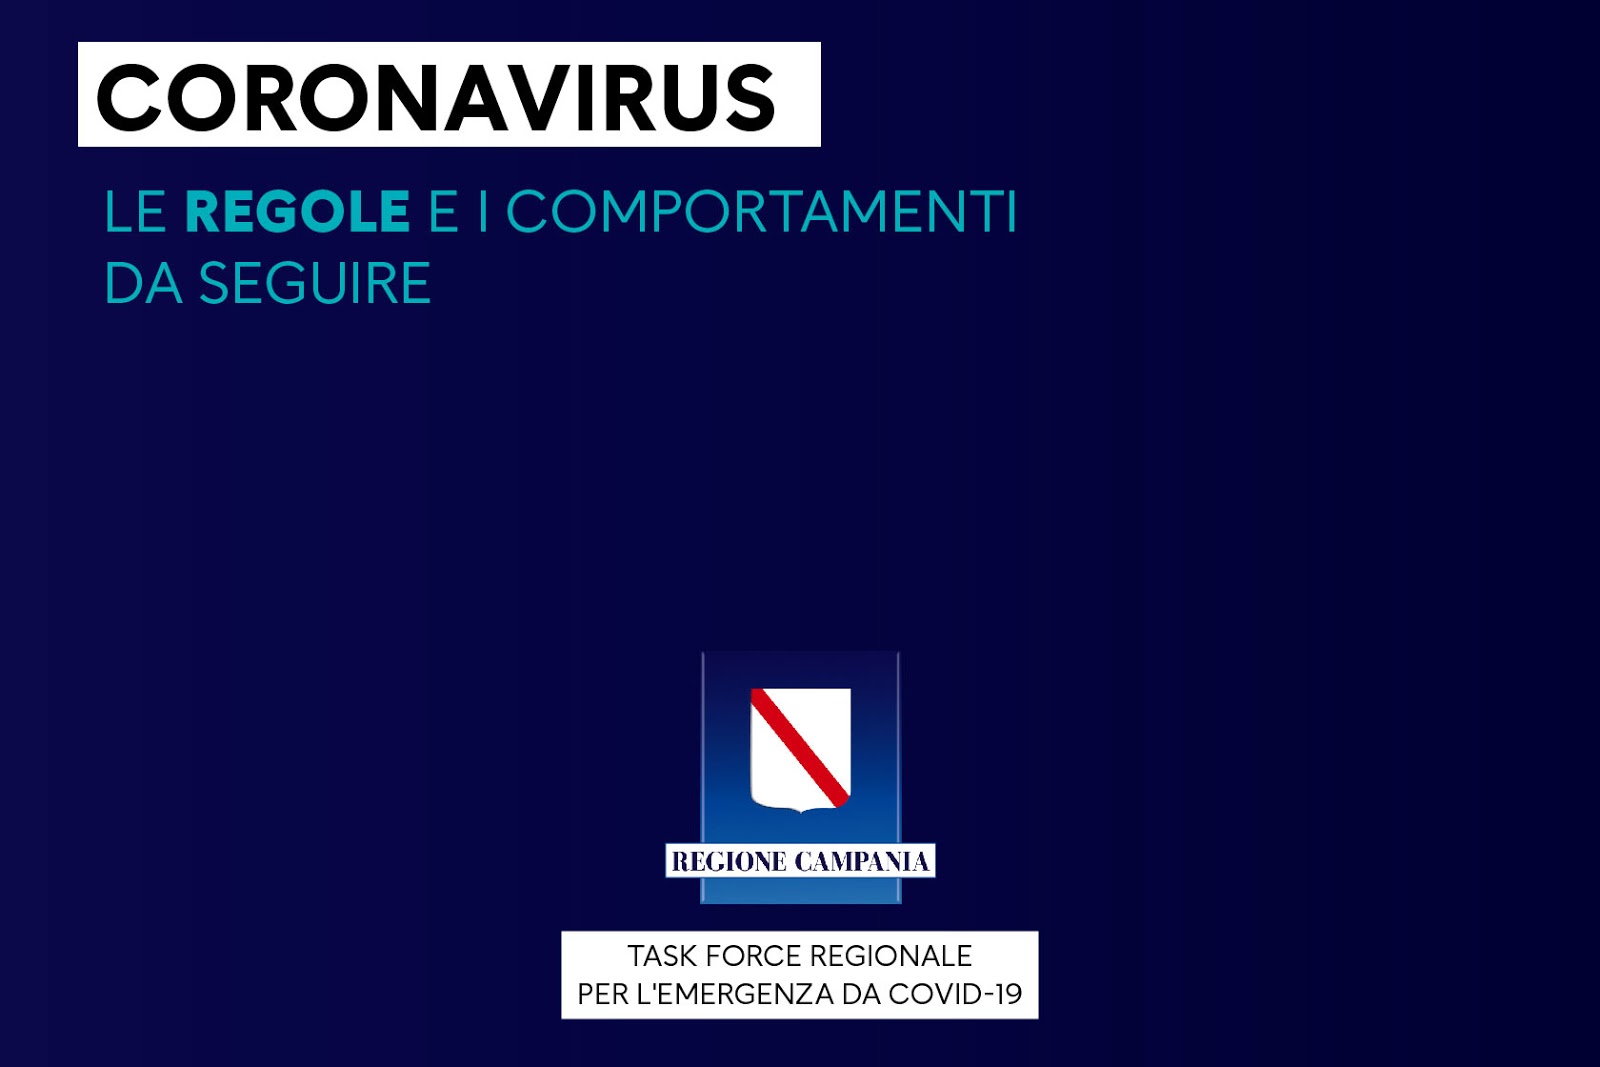 Il post della Regione Campania contro il coronavirus